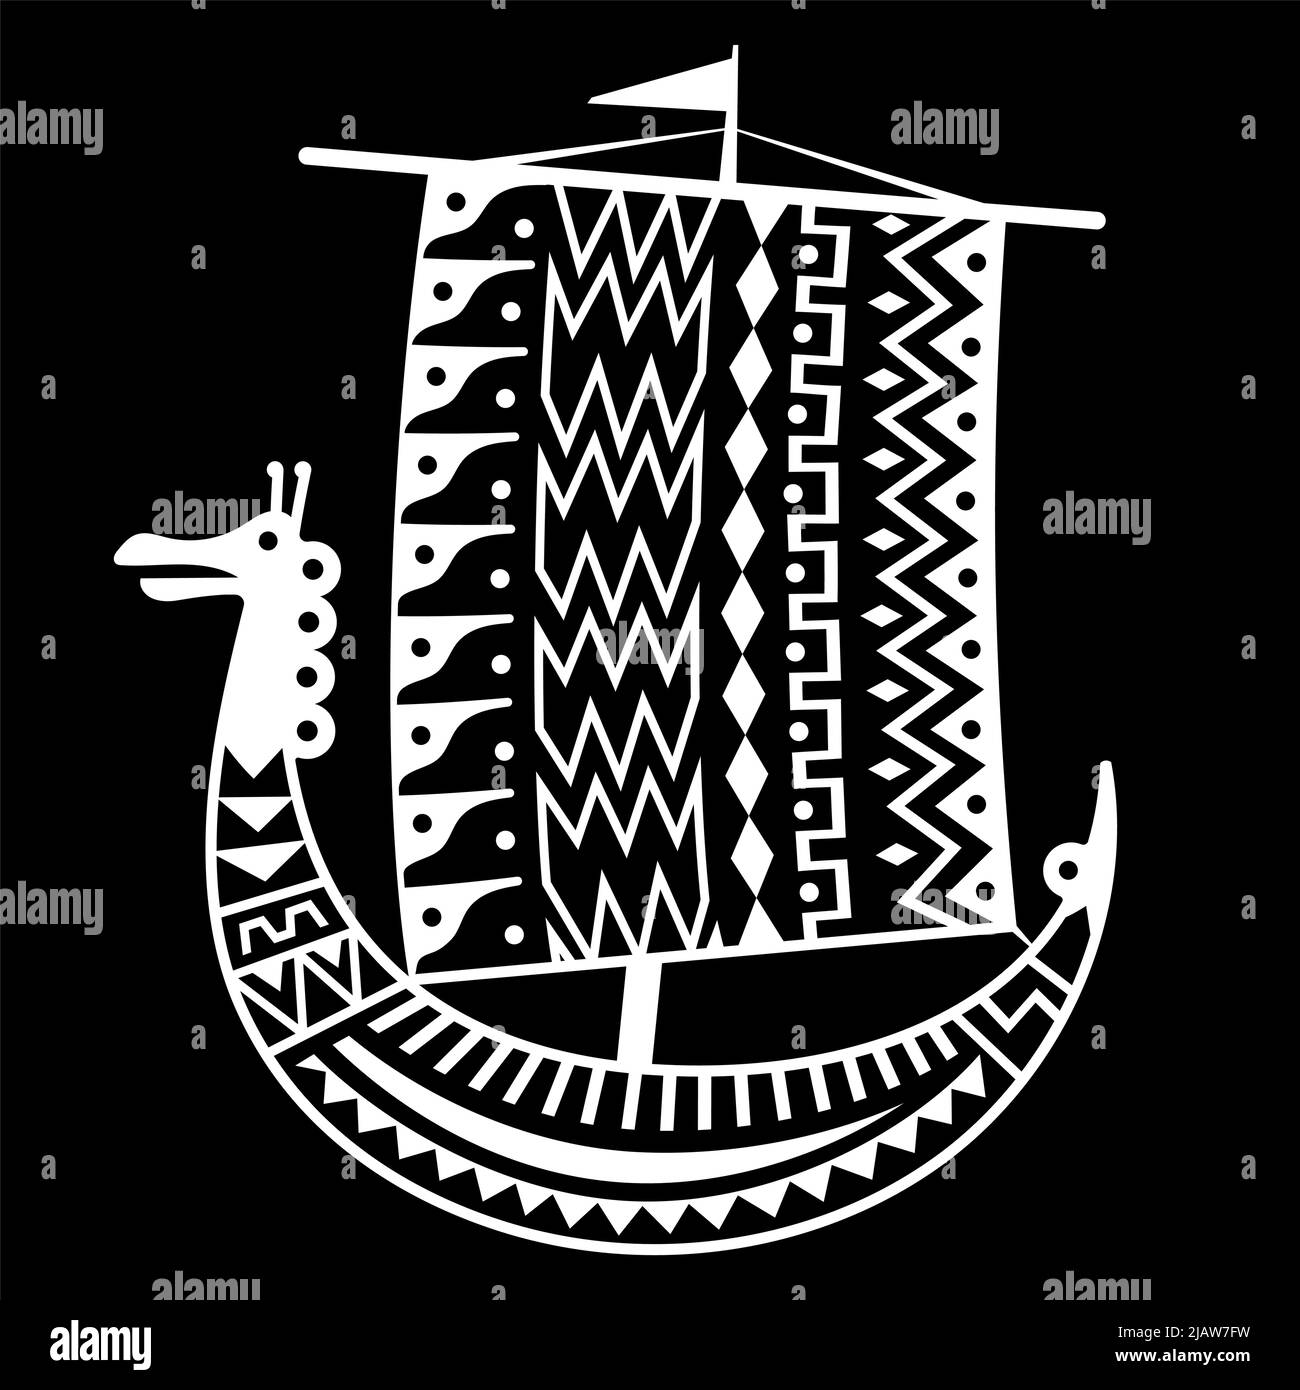 Un'antica immagine scandinava di una nave vichinga decorata con un modello antico con una testa di drago Illustrazione Vettoriale